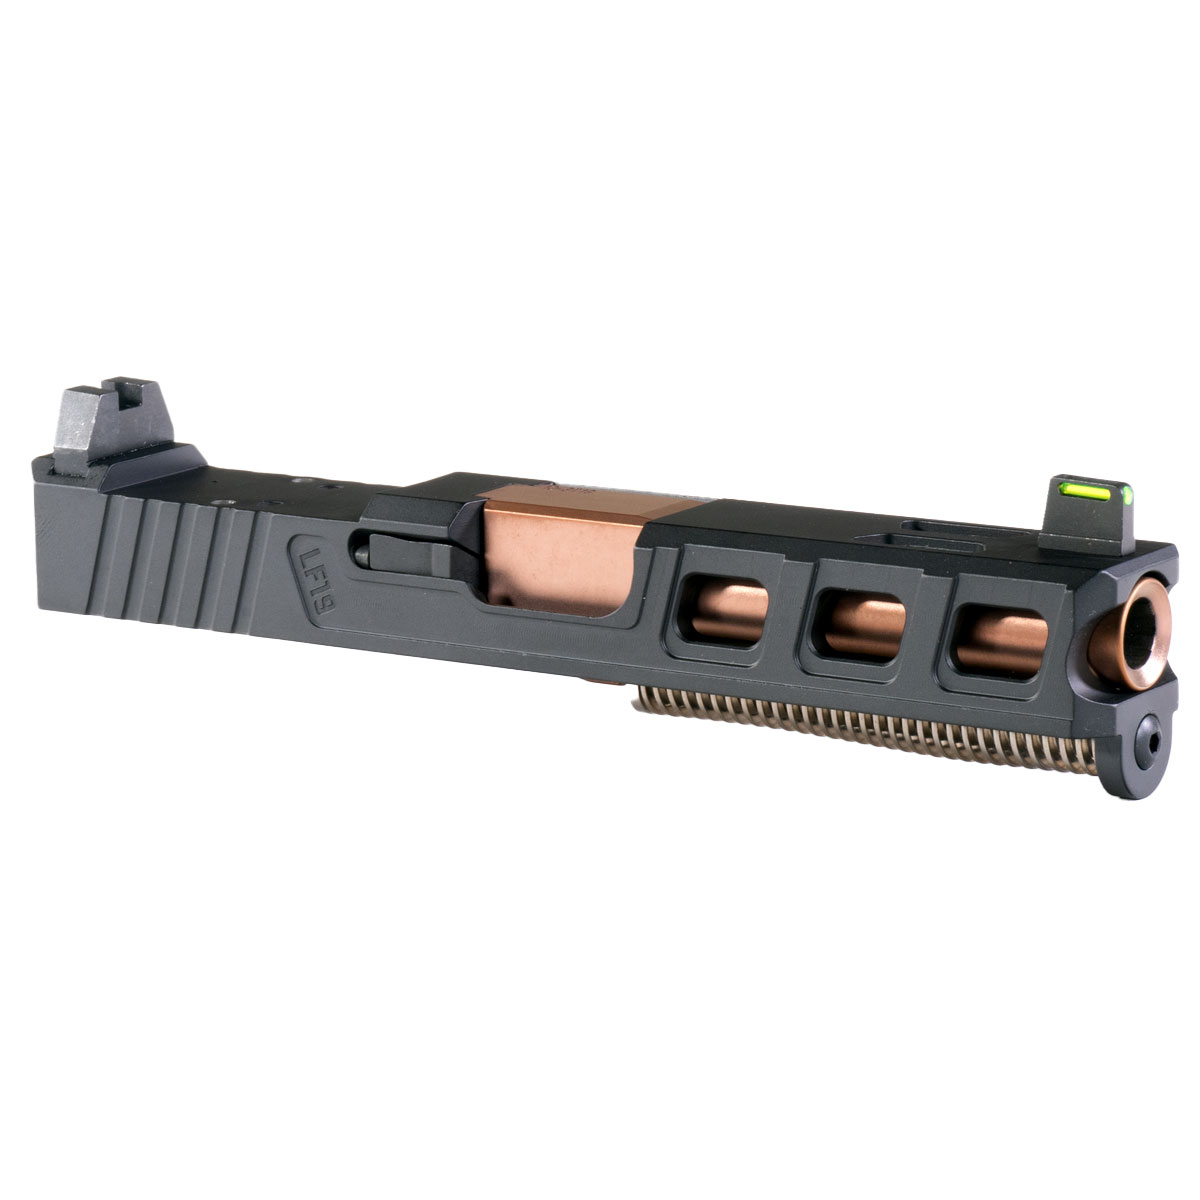 DD 'Platinaire' 9mm Complete Slide Kit - Glock 19 Gen 1-3 Compatible